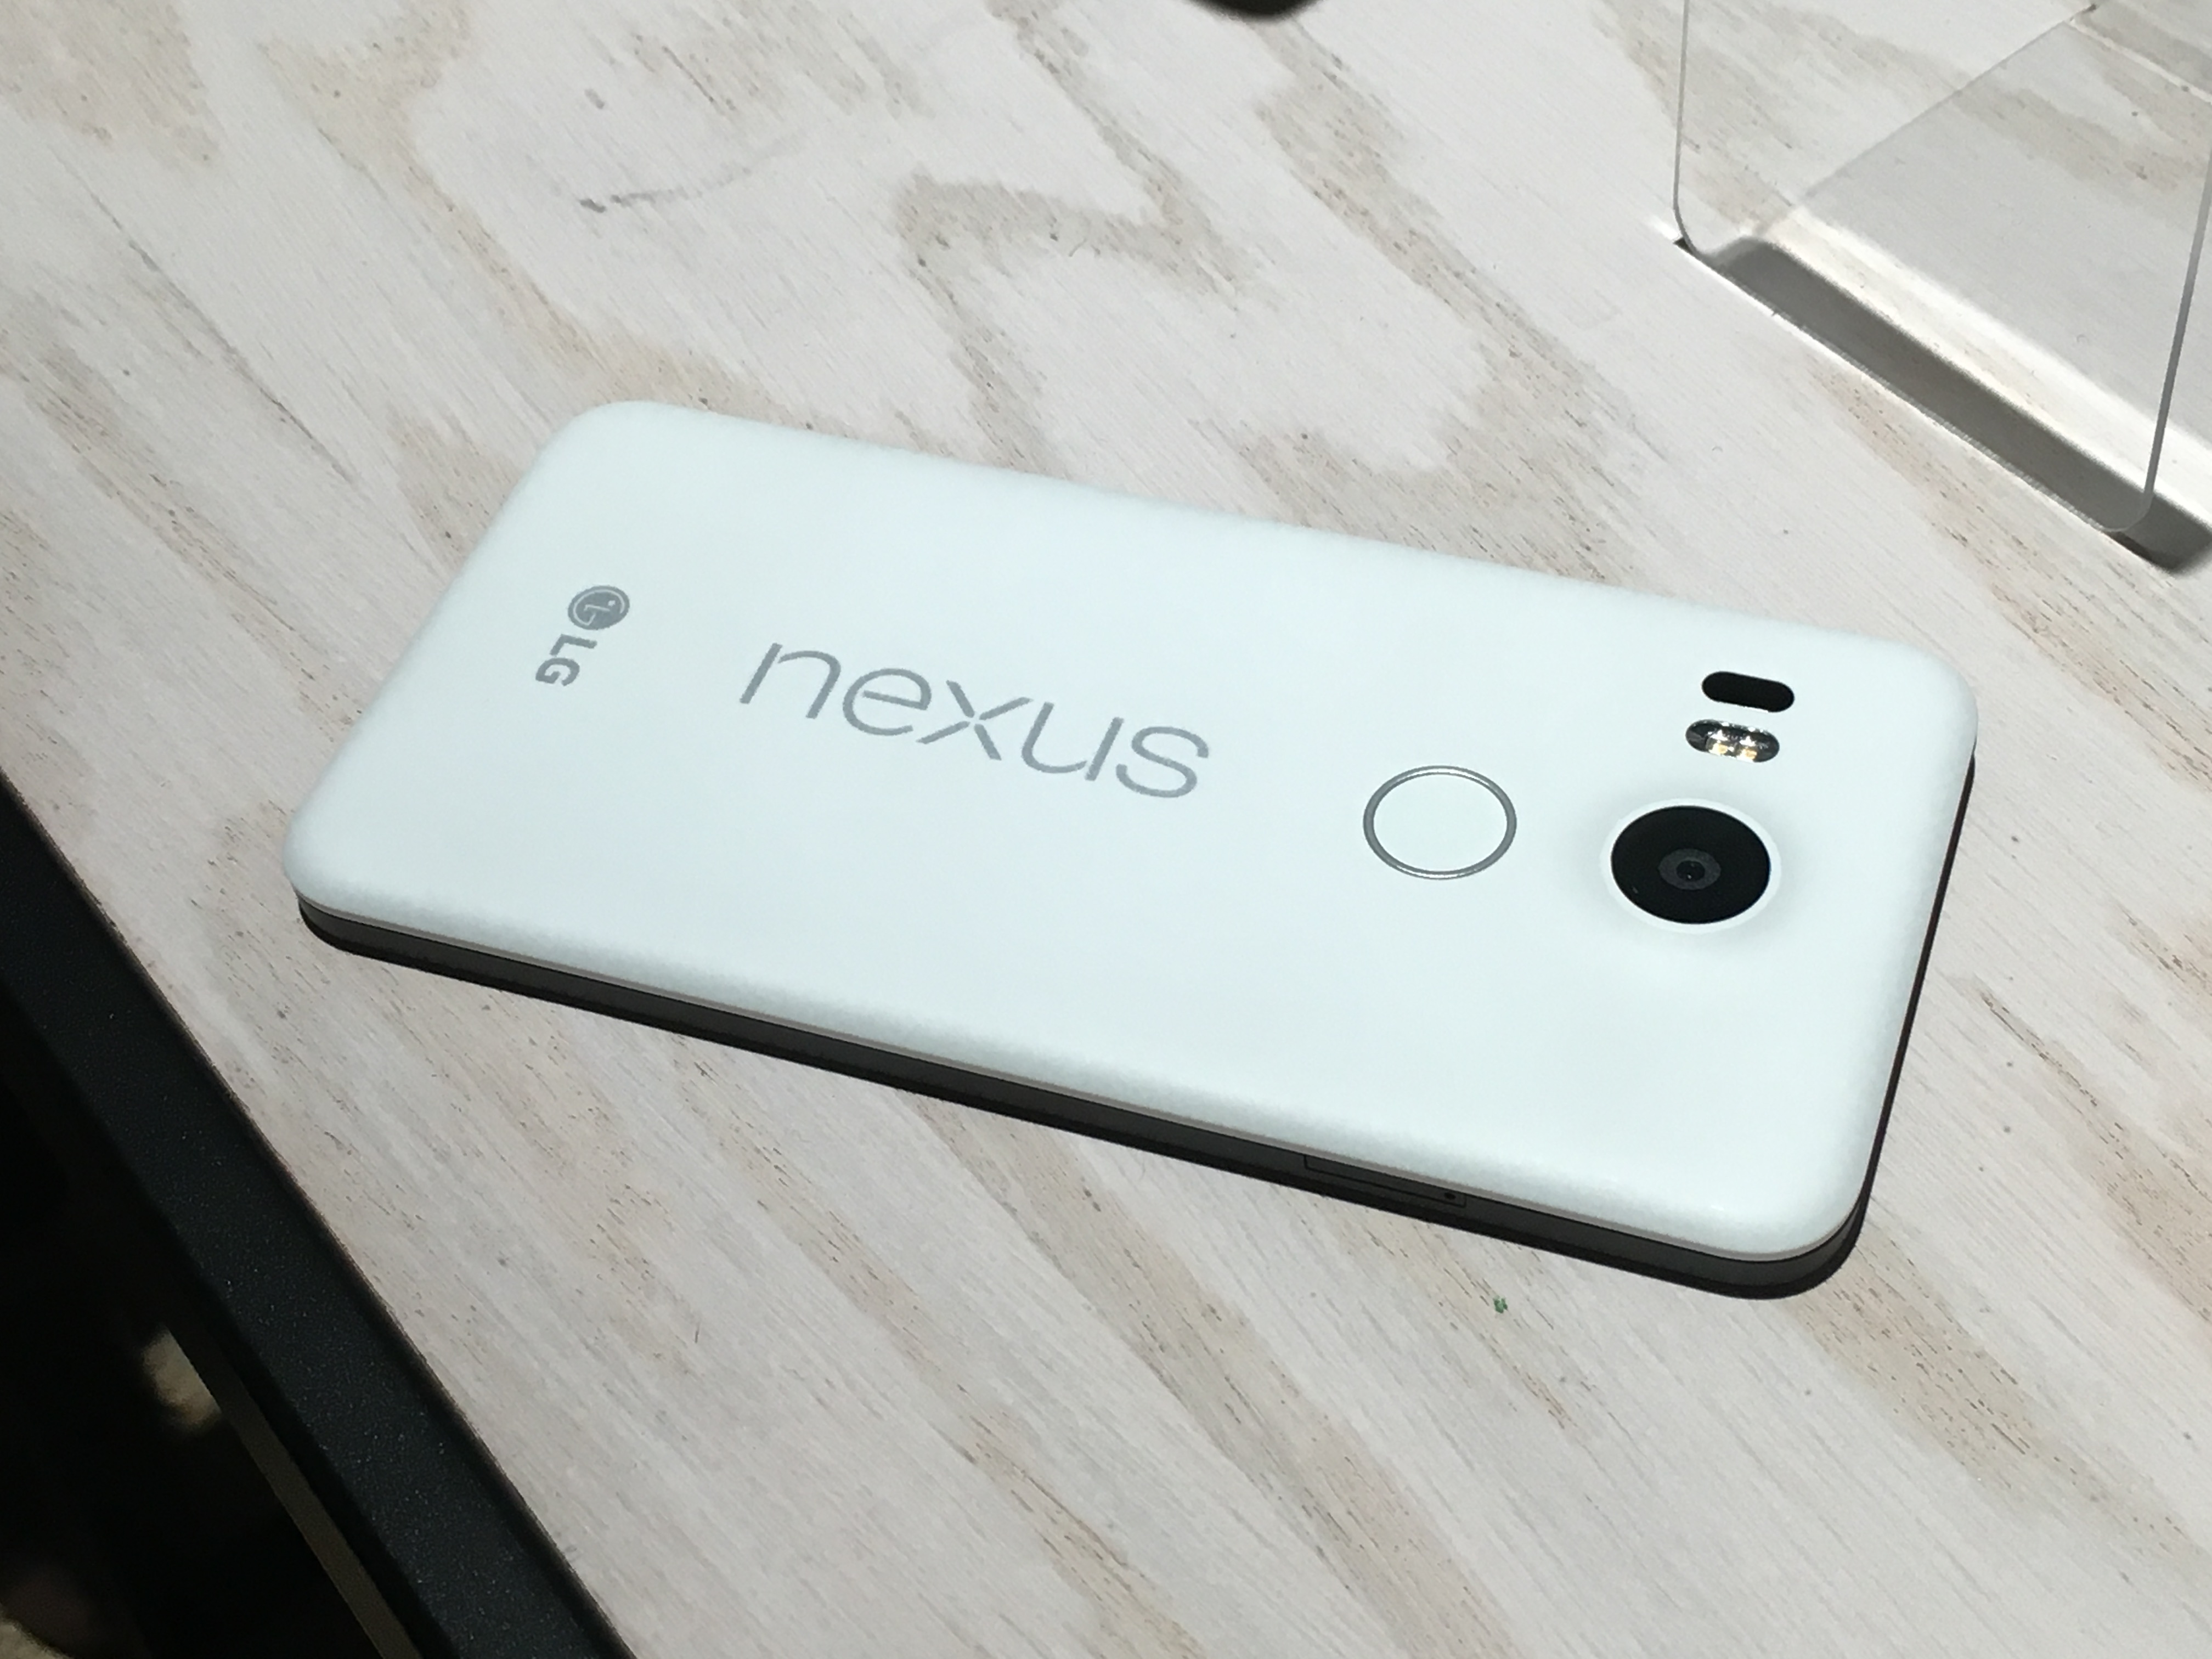 Nexus phone